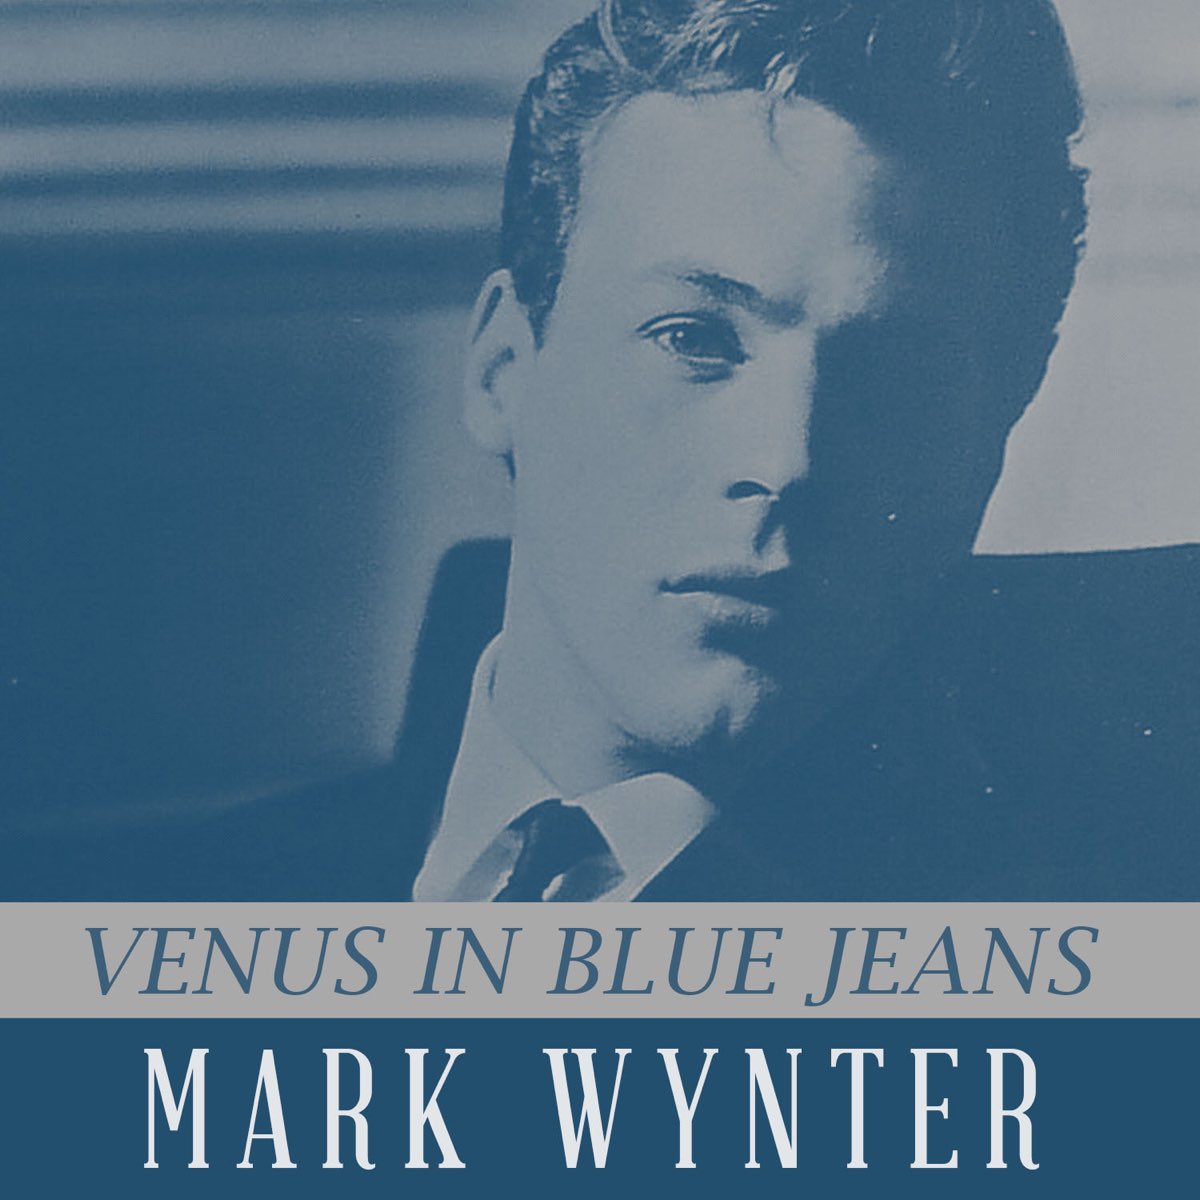 Venus in Blue Jeans - Single by Mark Wynter on Apple Music